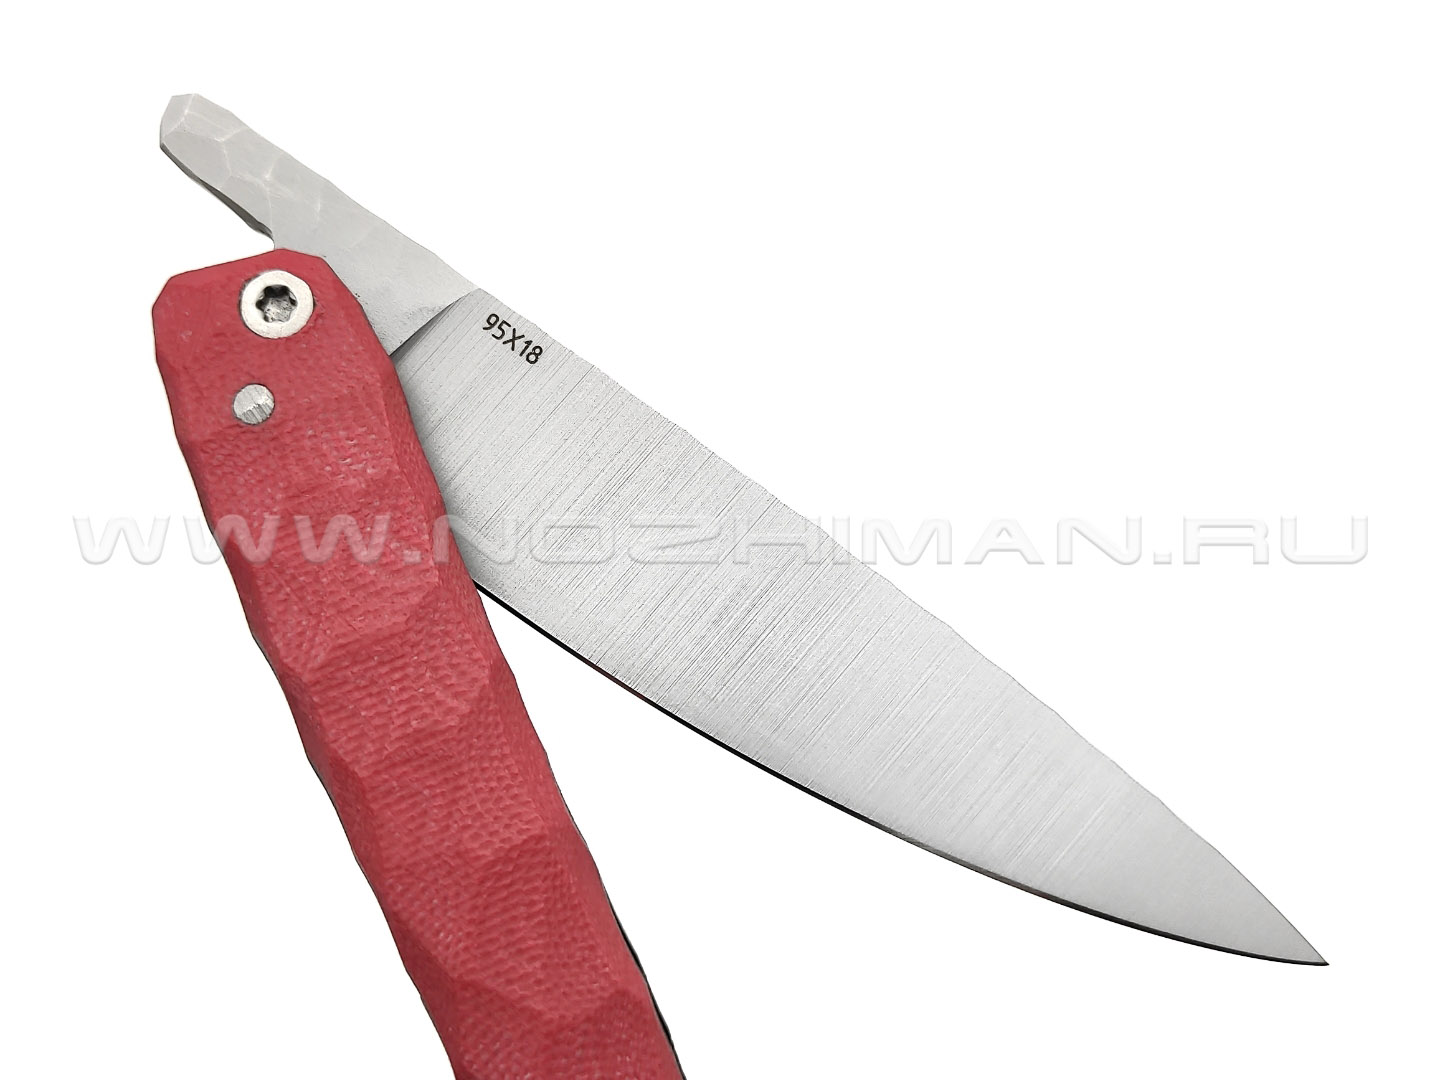 Андрей Кулаков большой фрикционный нож KUL061 сталь 95Х18, рукоять G10 red & black